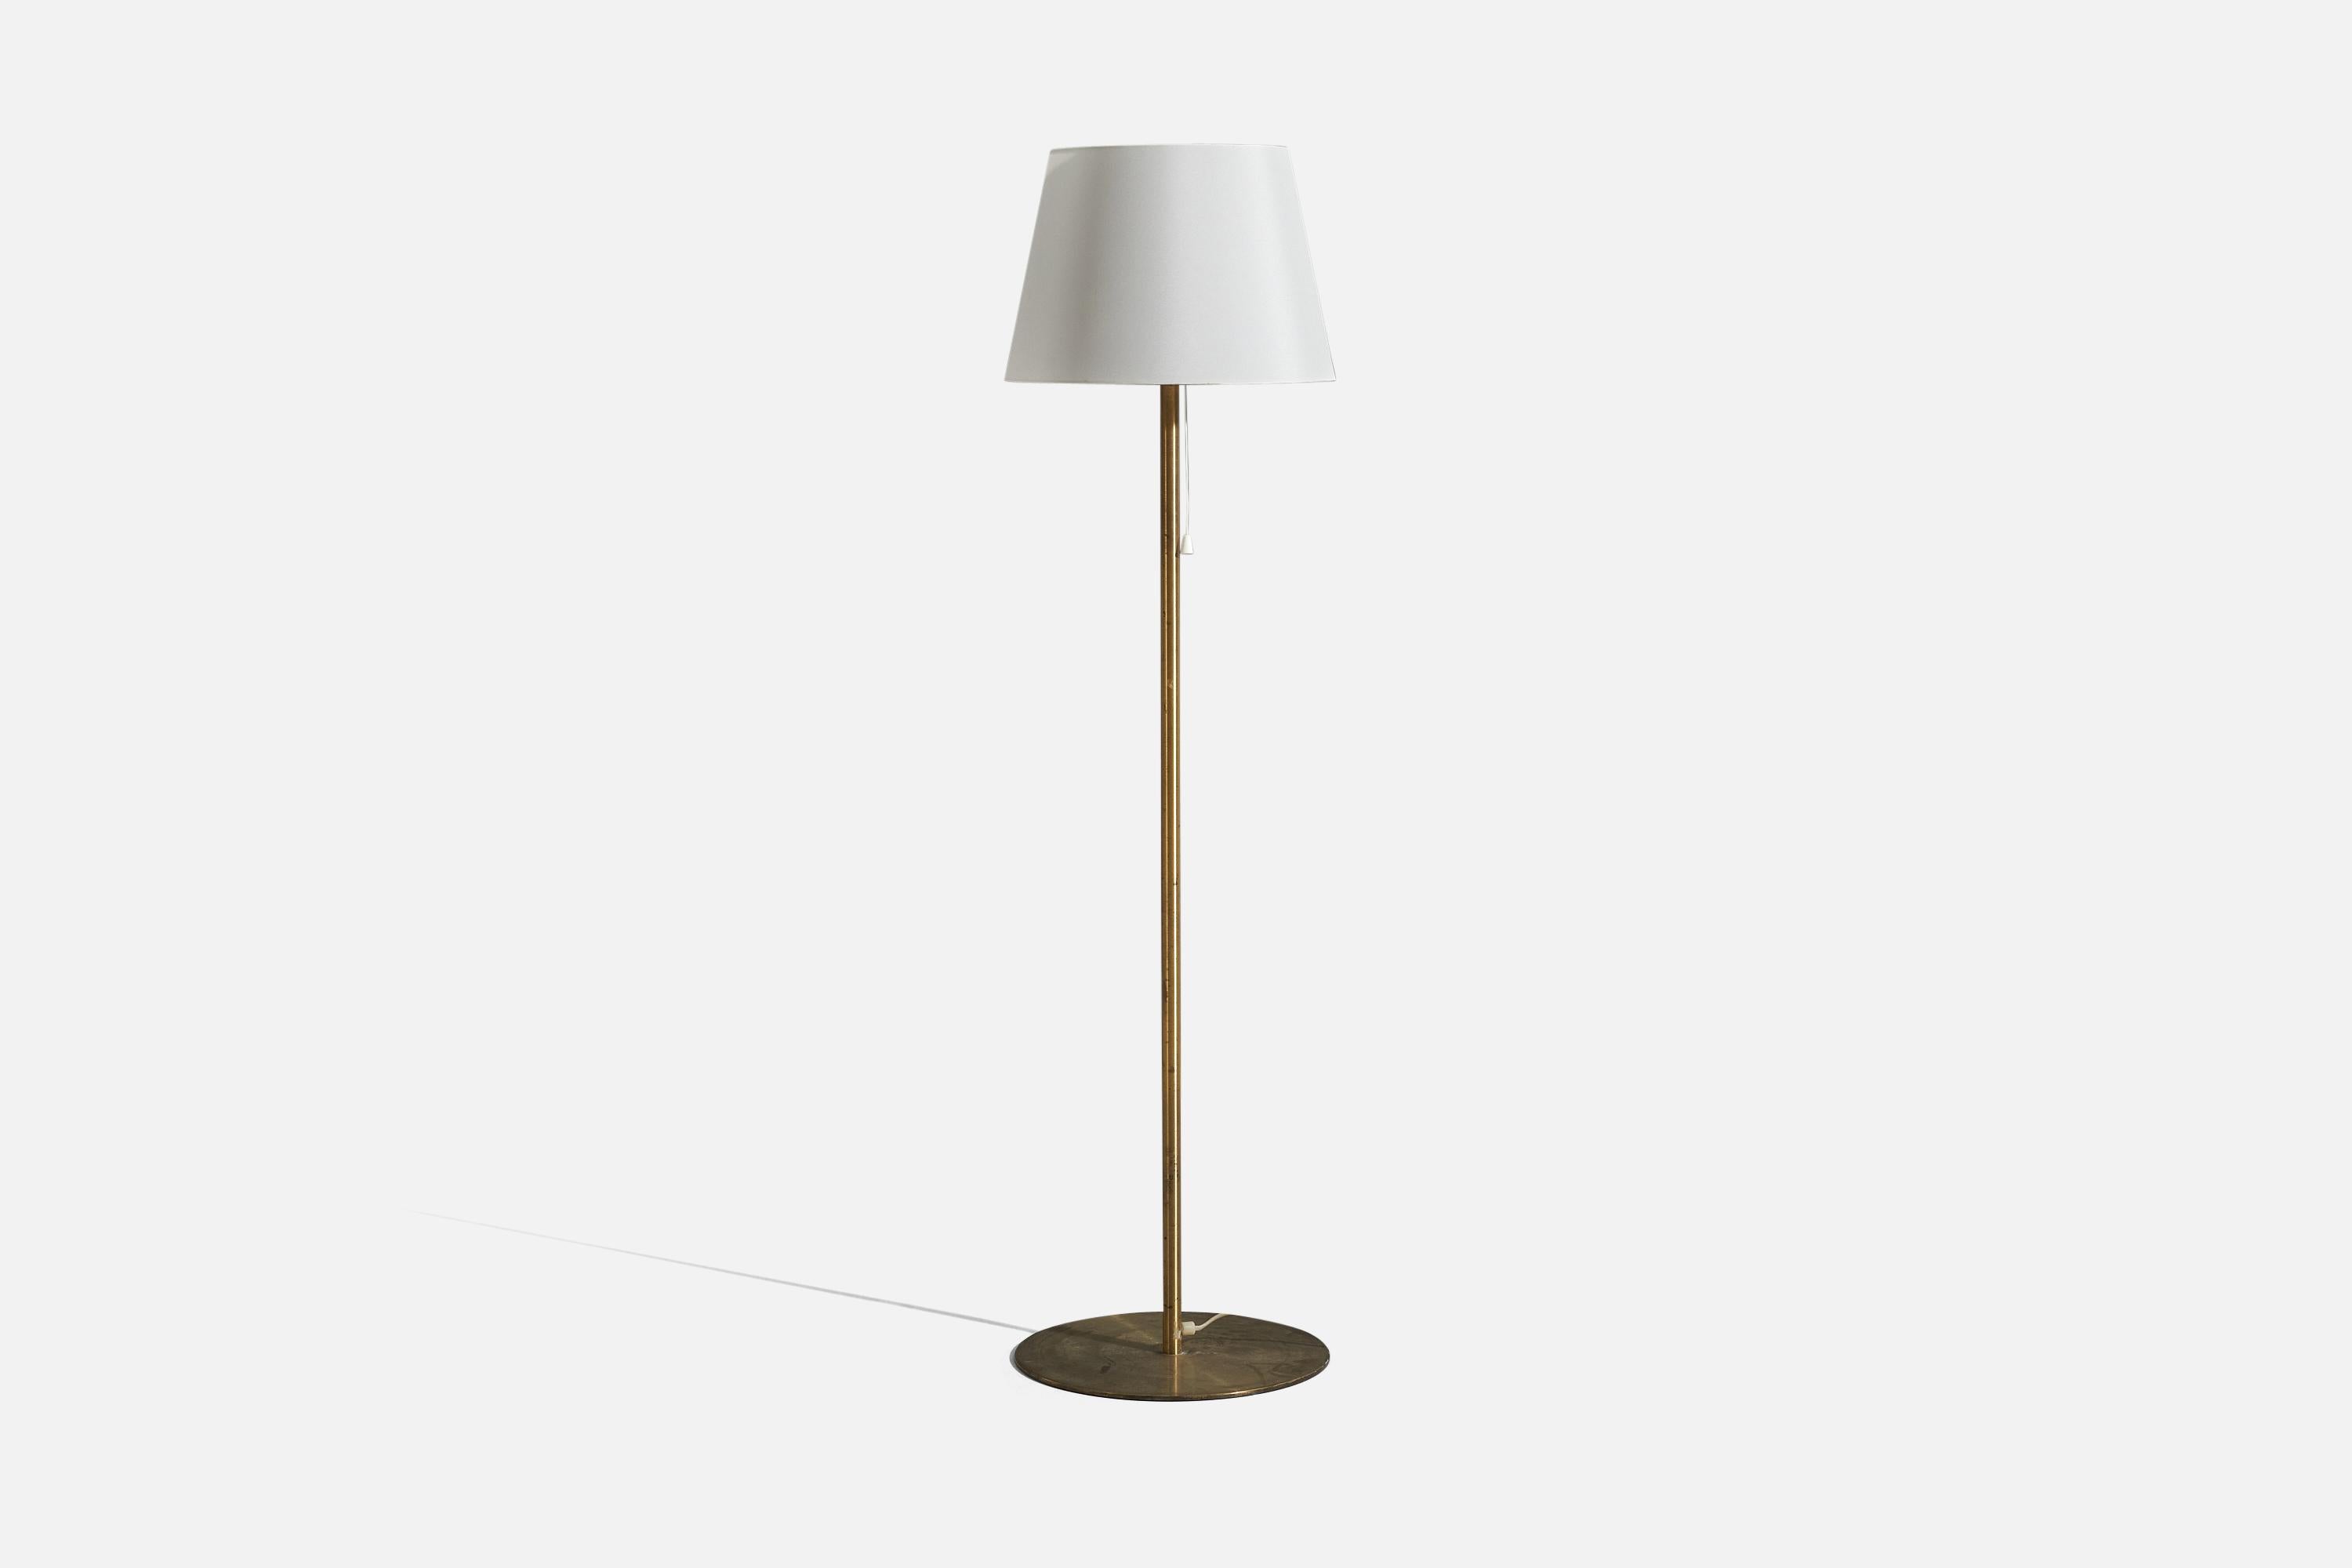 Un lampadaire en laiton avec un abat-jour en tissu, conçu et produit par Luxus Vittsjö, Suède, années 1960.

Vendu avec abat-jour 
Dimensions du lampadaire (pouces) : 48.25 x 13,875 x 13,875 (H x L x P)
Dimensions de l'abat-jour (pouces) : 13 x